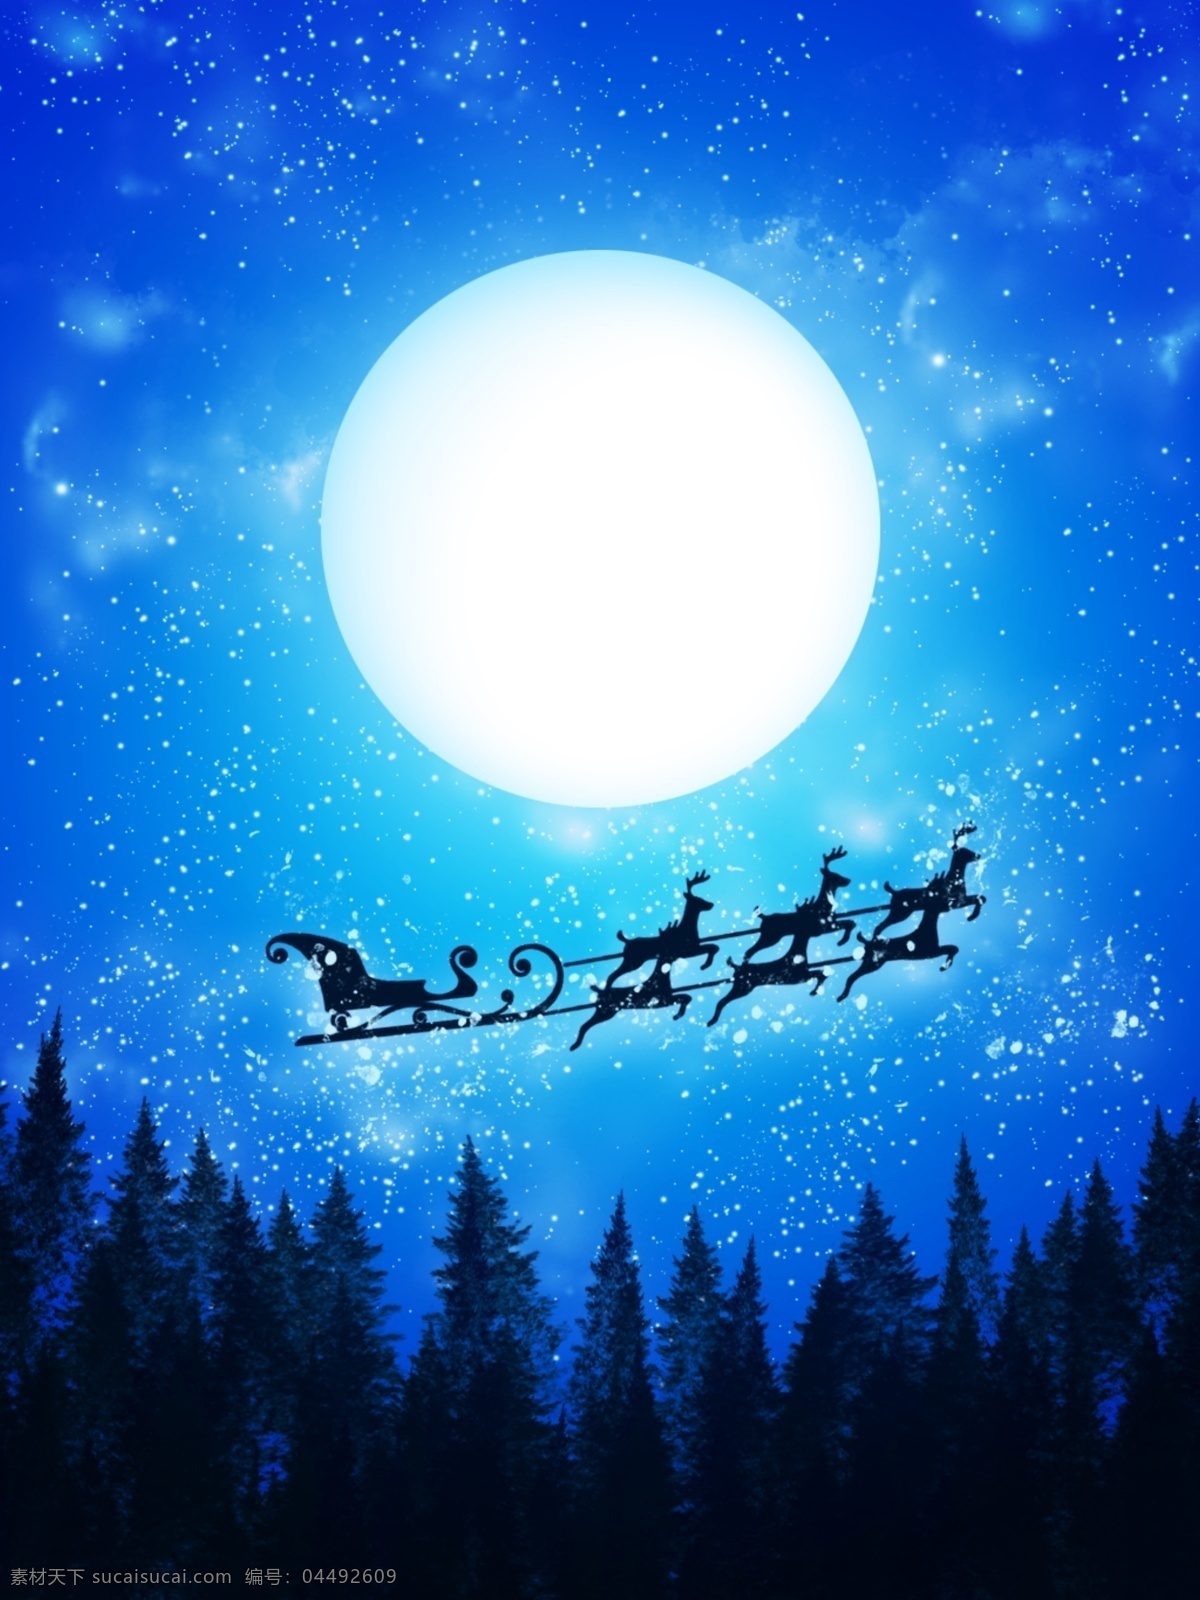 纯 原创 手绘 森林 夜晚 圣诞节 卡通 蓝色 背景 月亮 冬天 剪影 星空背景 卡通背景 蓝色夜空 松树林 森林背景 圣诞节背景